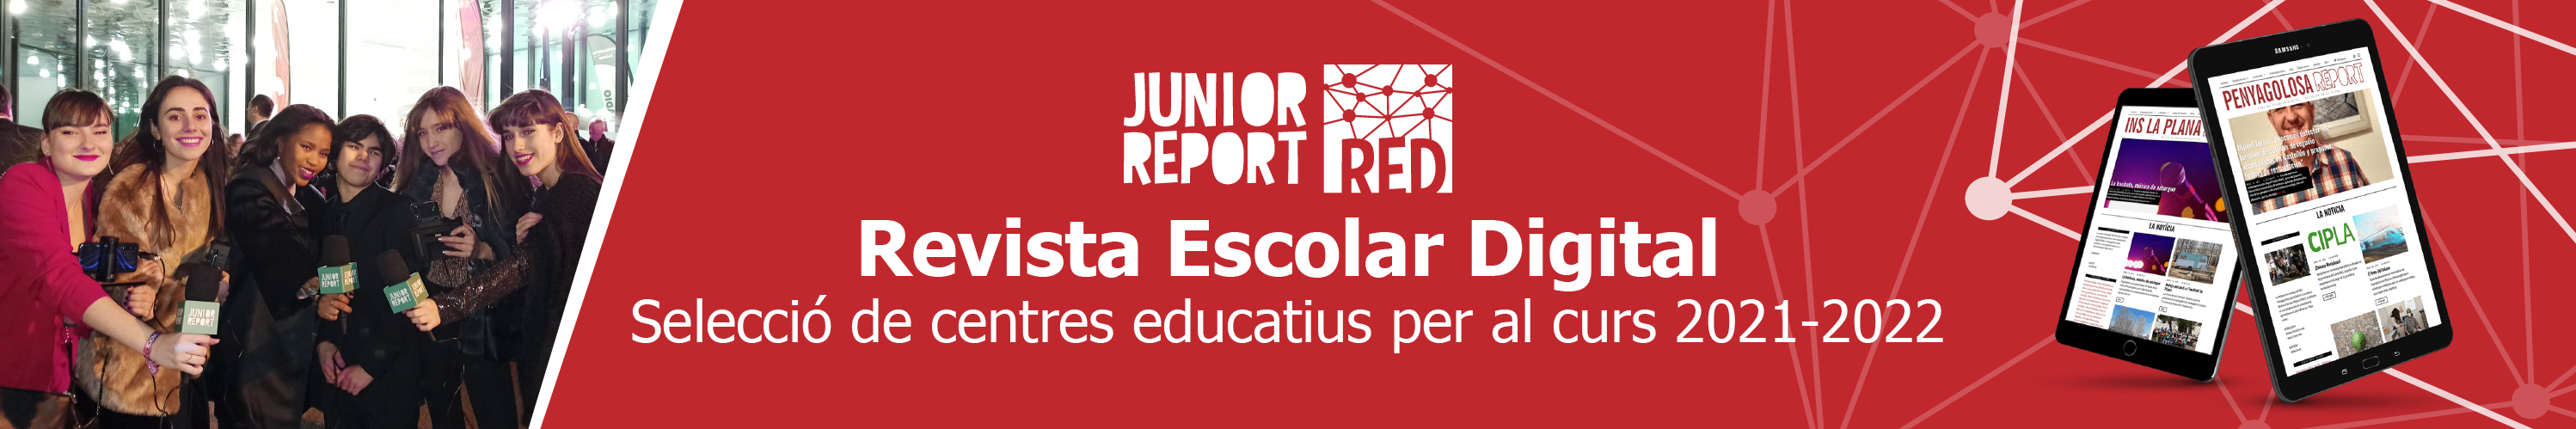 Banner per fer clic i conèixer el projecte Junior Report RED Revista Escolar Digital, Selecció de centres educatius per al curs 2021-2022